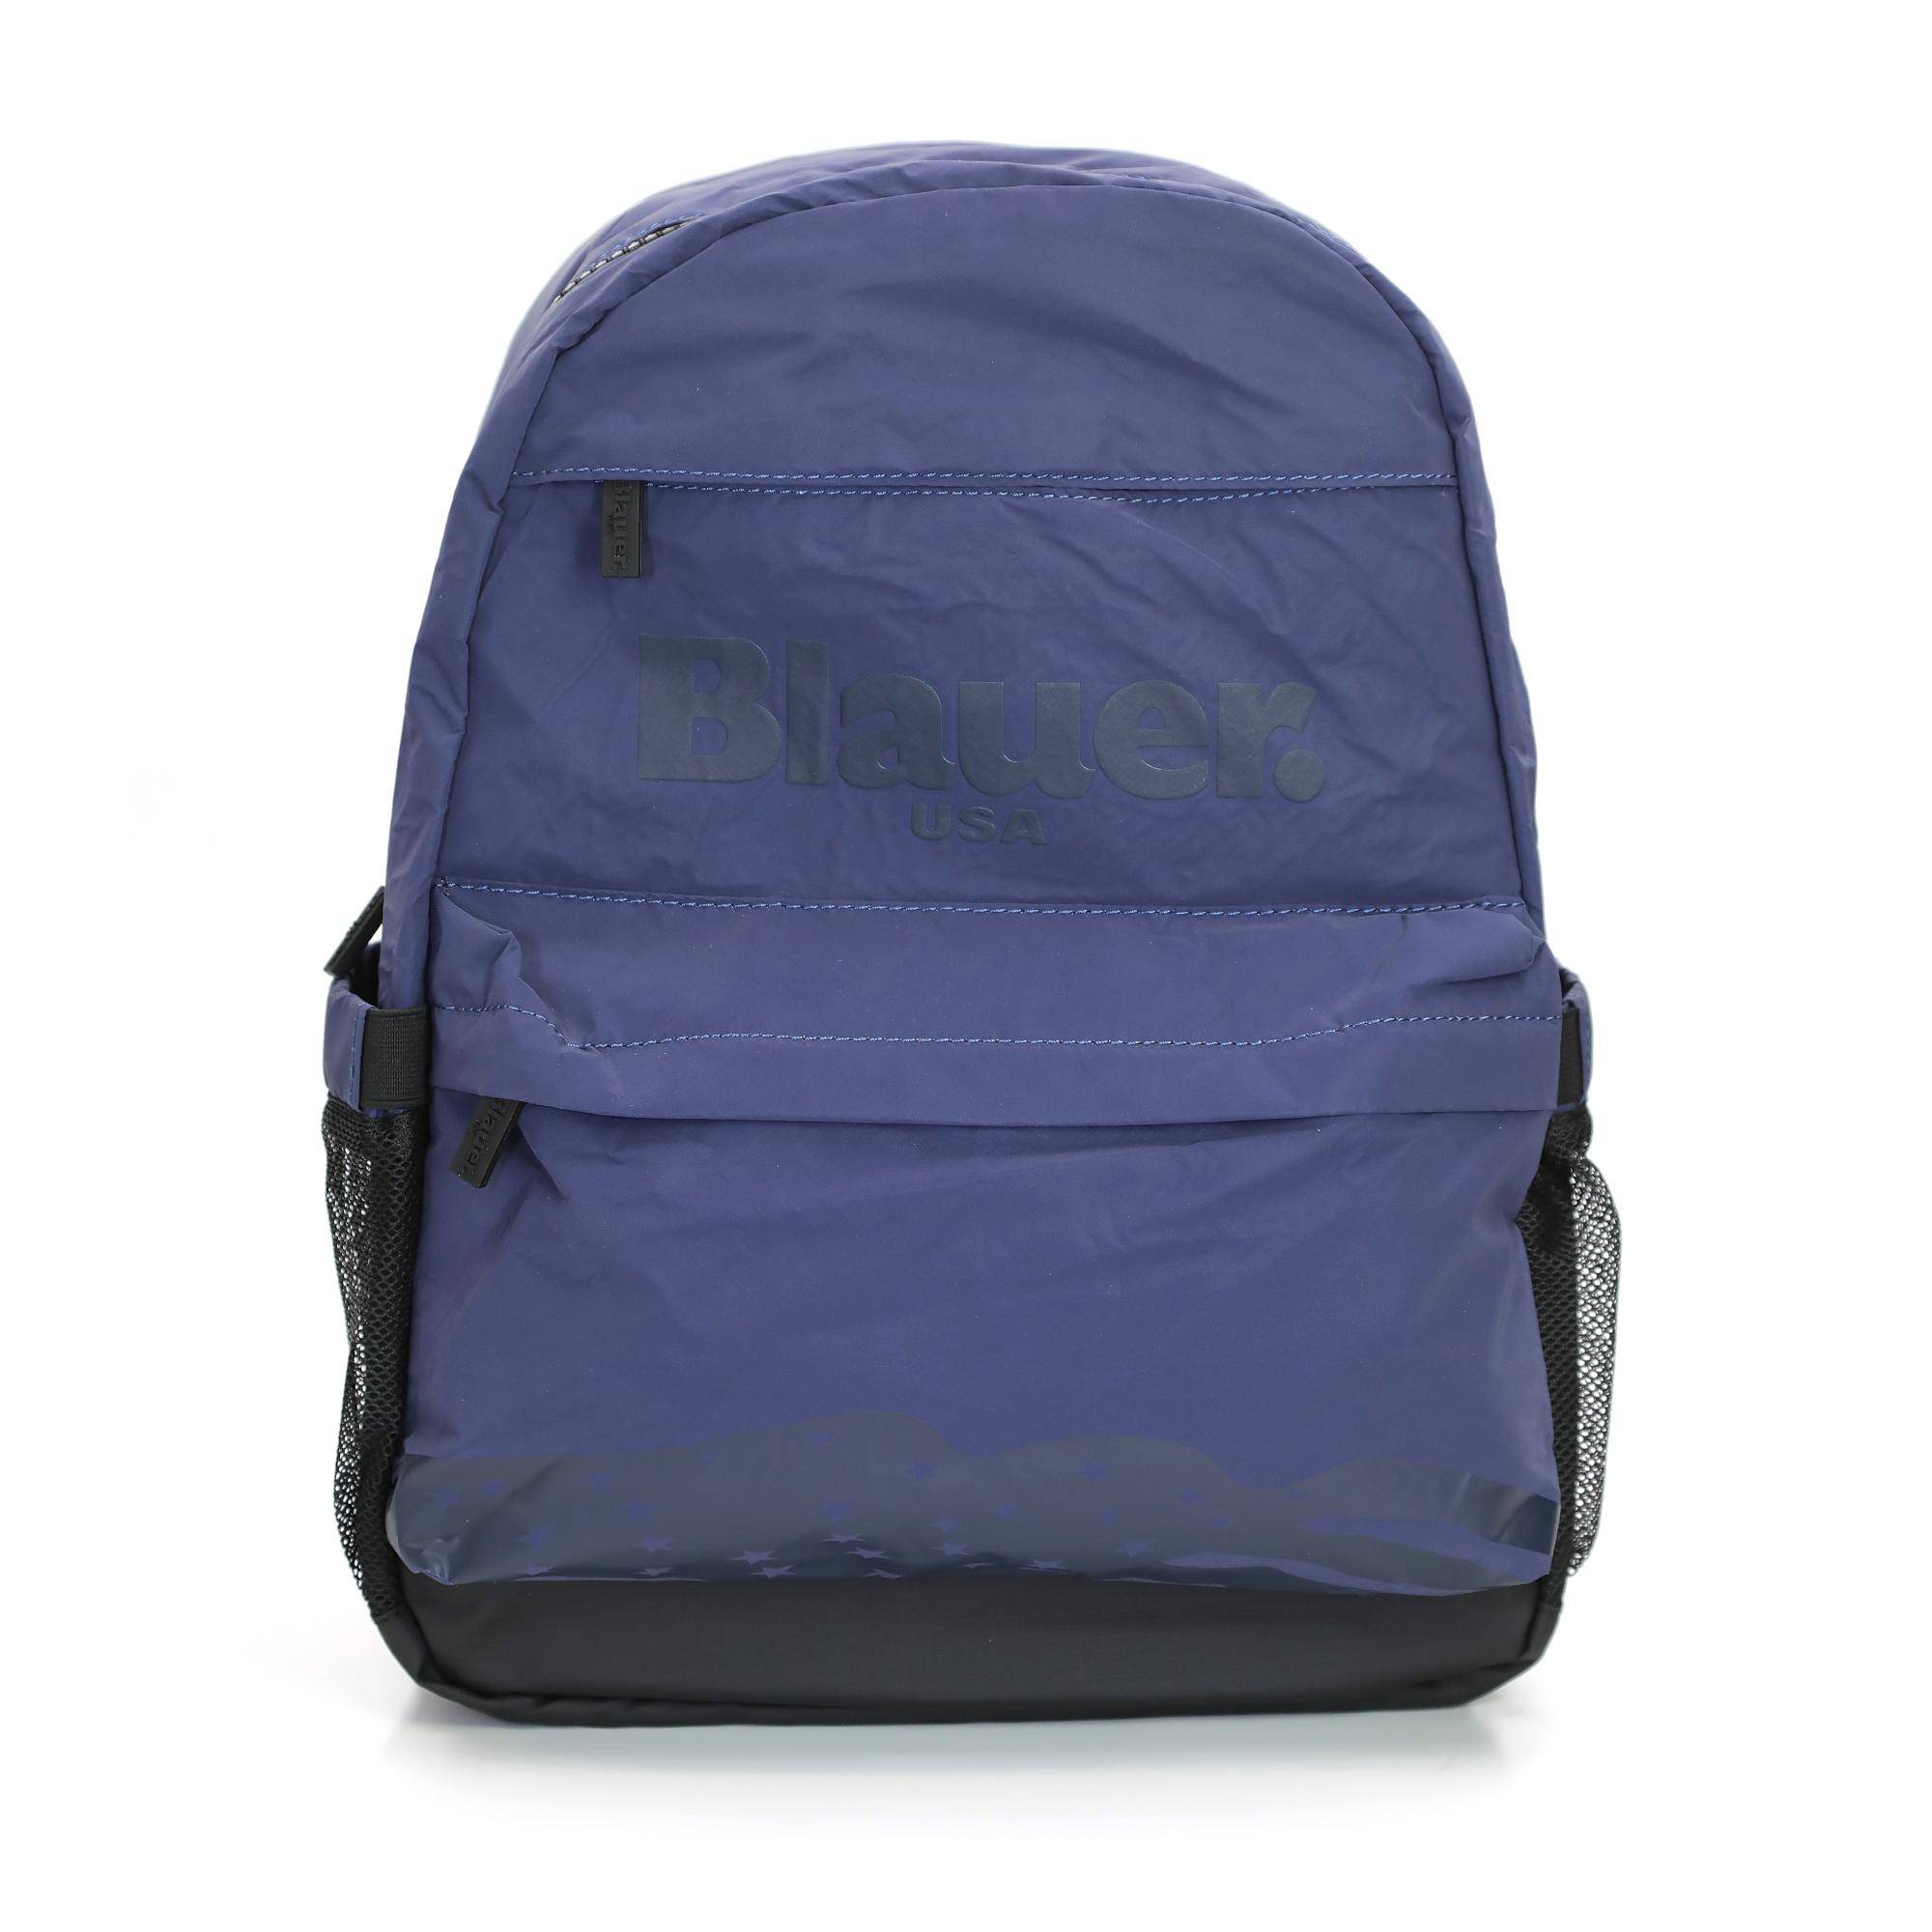 Рюкзак Blauer, синий, размер ONE SIZE - фото 1